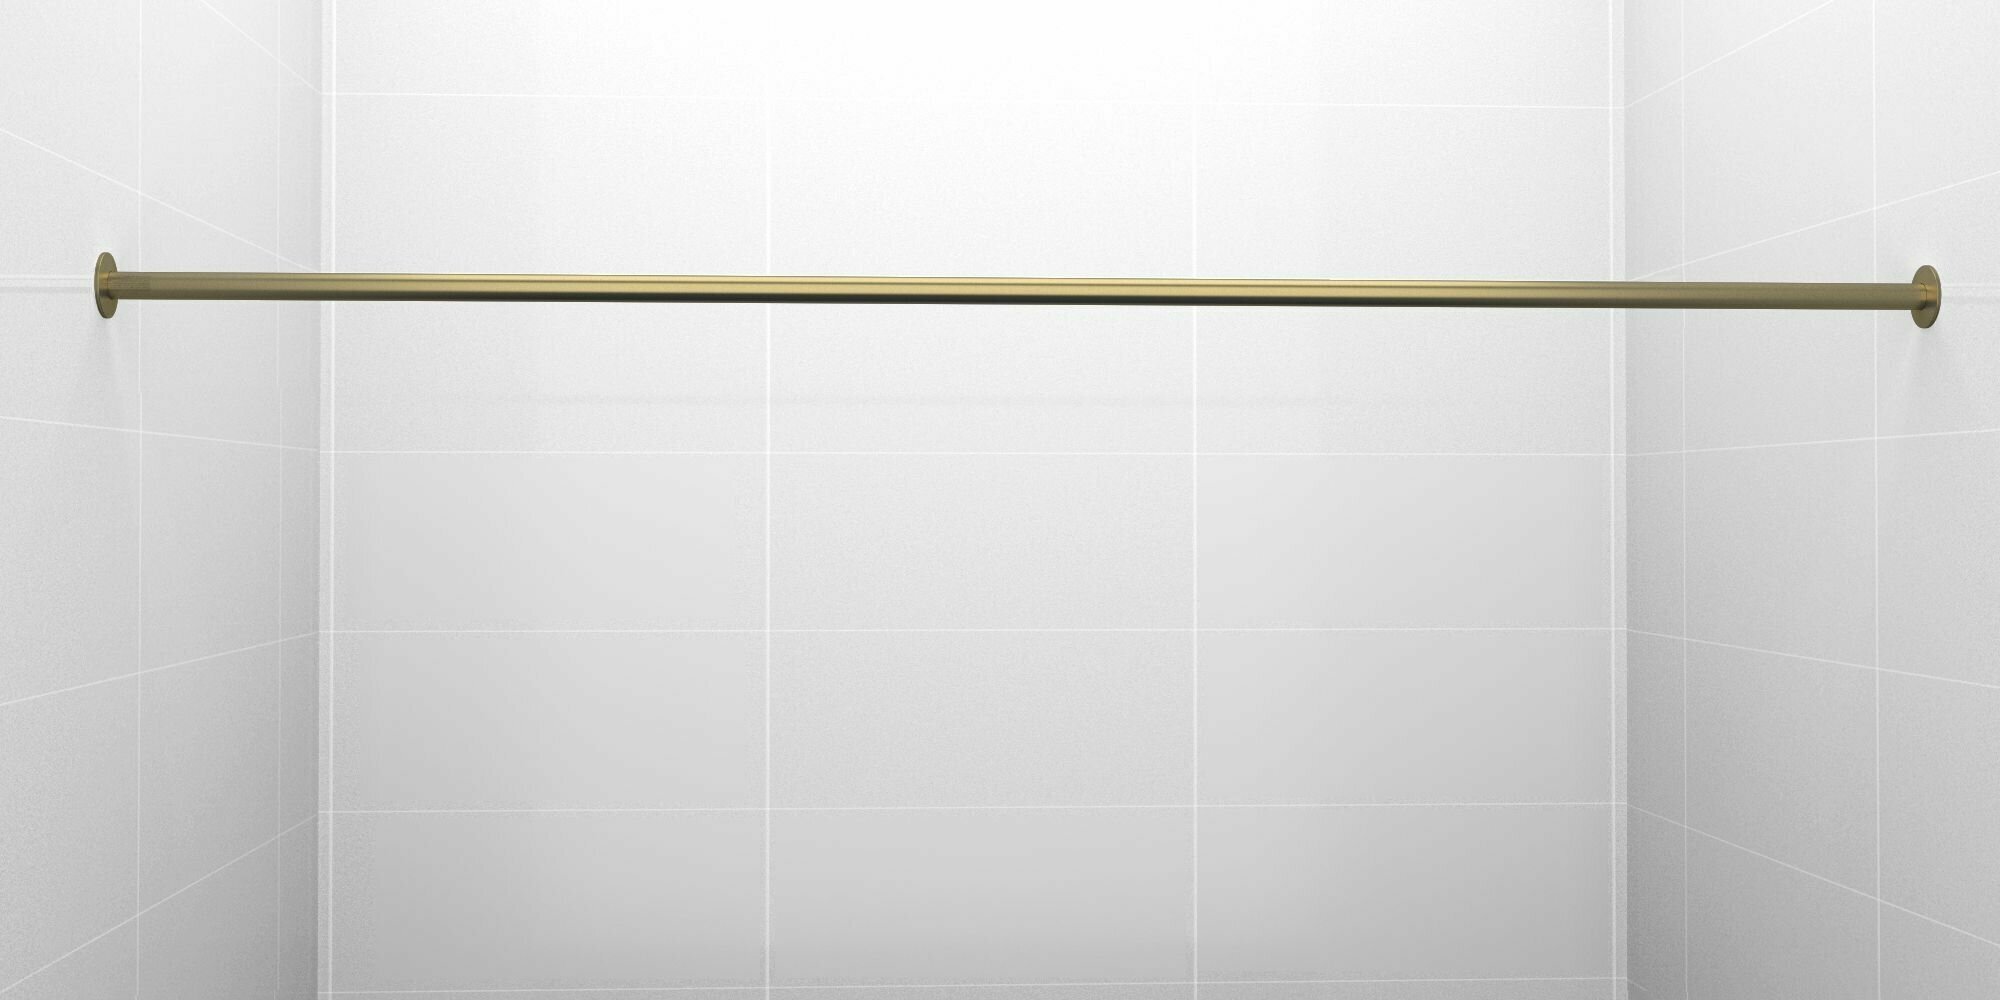 Карниз для ванной 190см (Штанга 20мм) Прямой Усиленный крепление 10см цельный из нержавейки цвет бронза